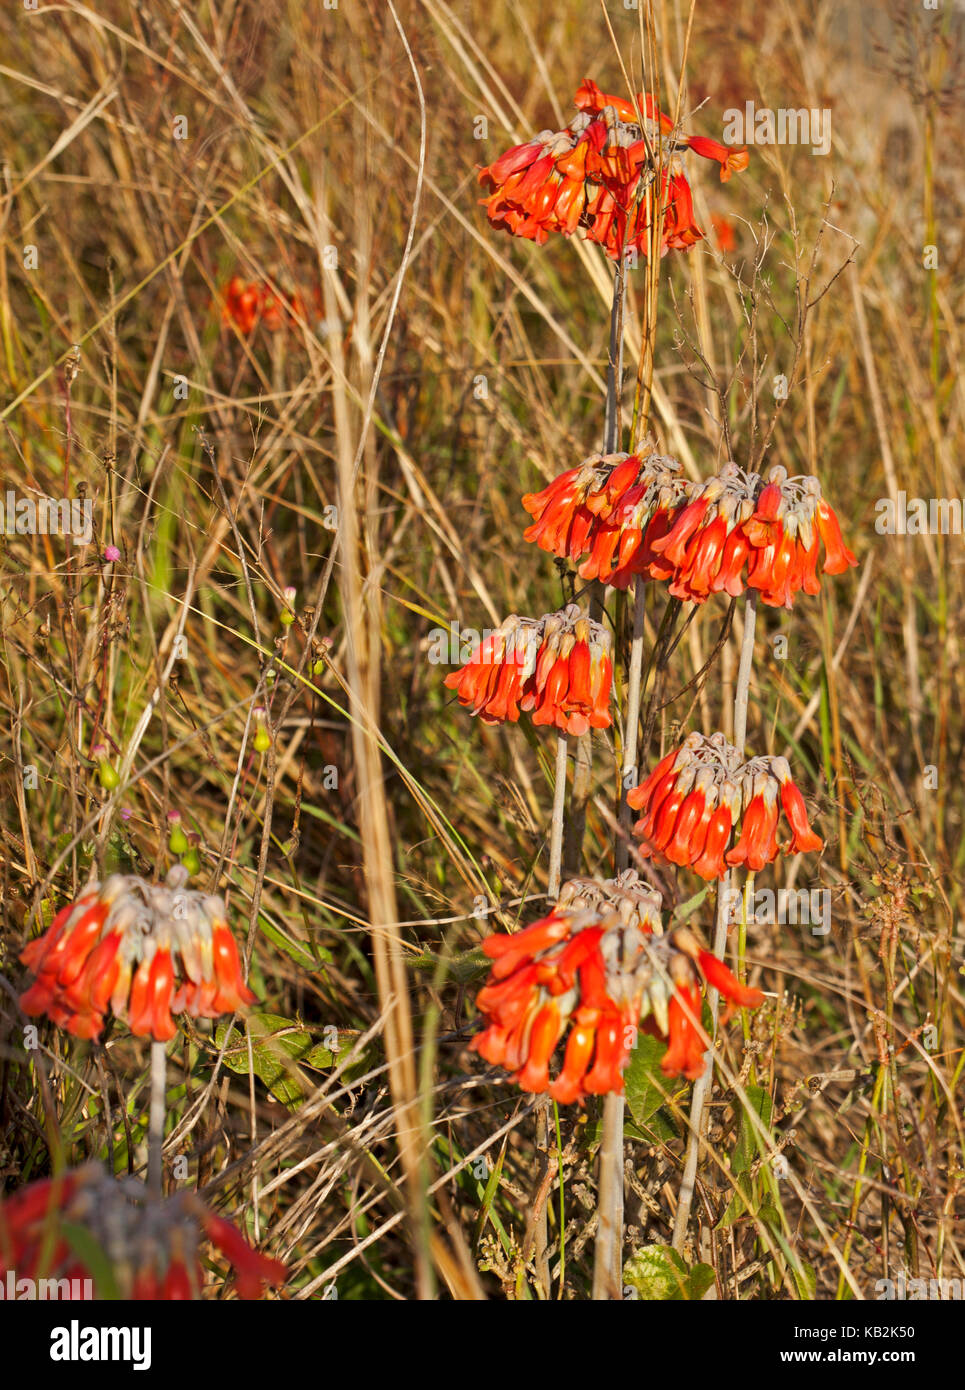 Racimos de flores brillantes de color anaranjado de la madre-de-millones, plantas suculentas, bryophyllum / calanchoe delagoense syn. b. tubiflorum, especies de malezas invasoras Foto de stock